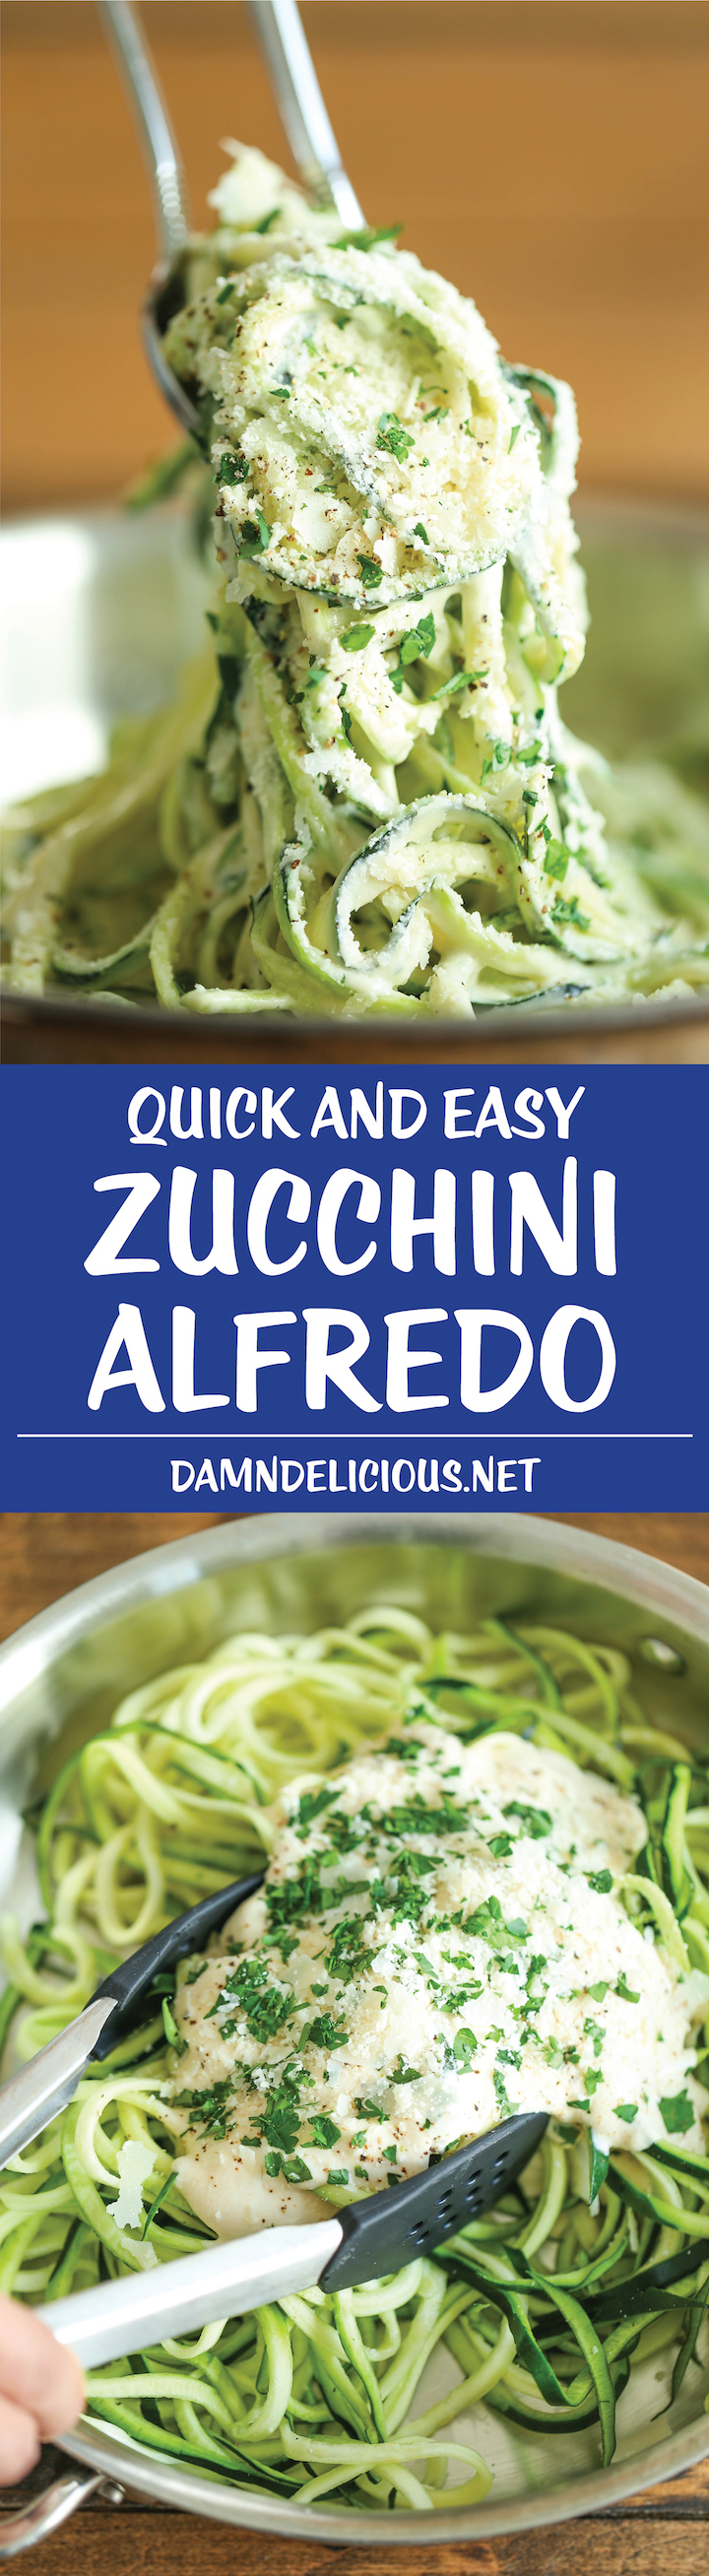 Zucchini Alfredo - Sain, décadent, incroyablement crémeux ET faible en glucides.  Enfin, un plat alfredo sans culpabilité que toute la famille peut apprécier !  203,6 calories.